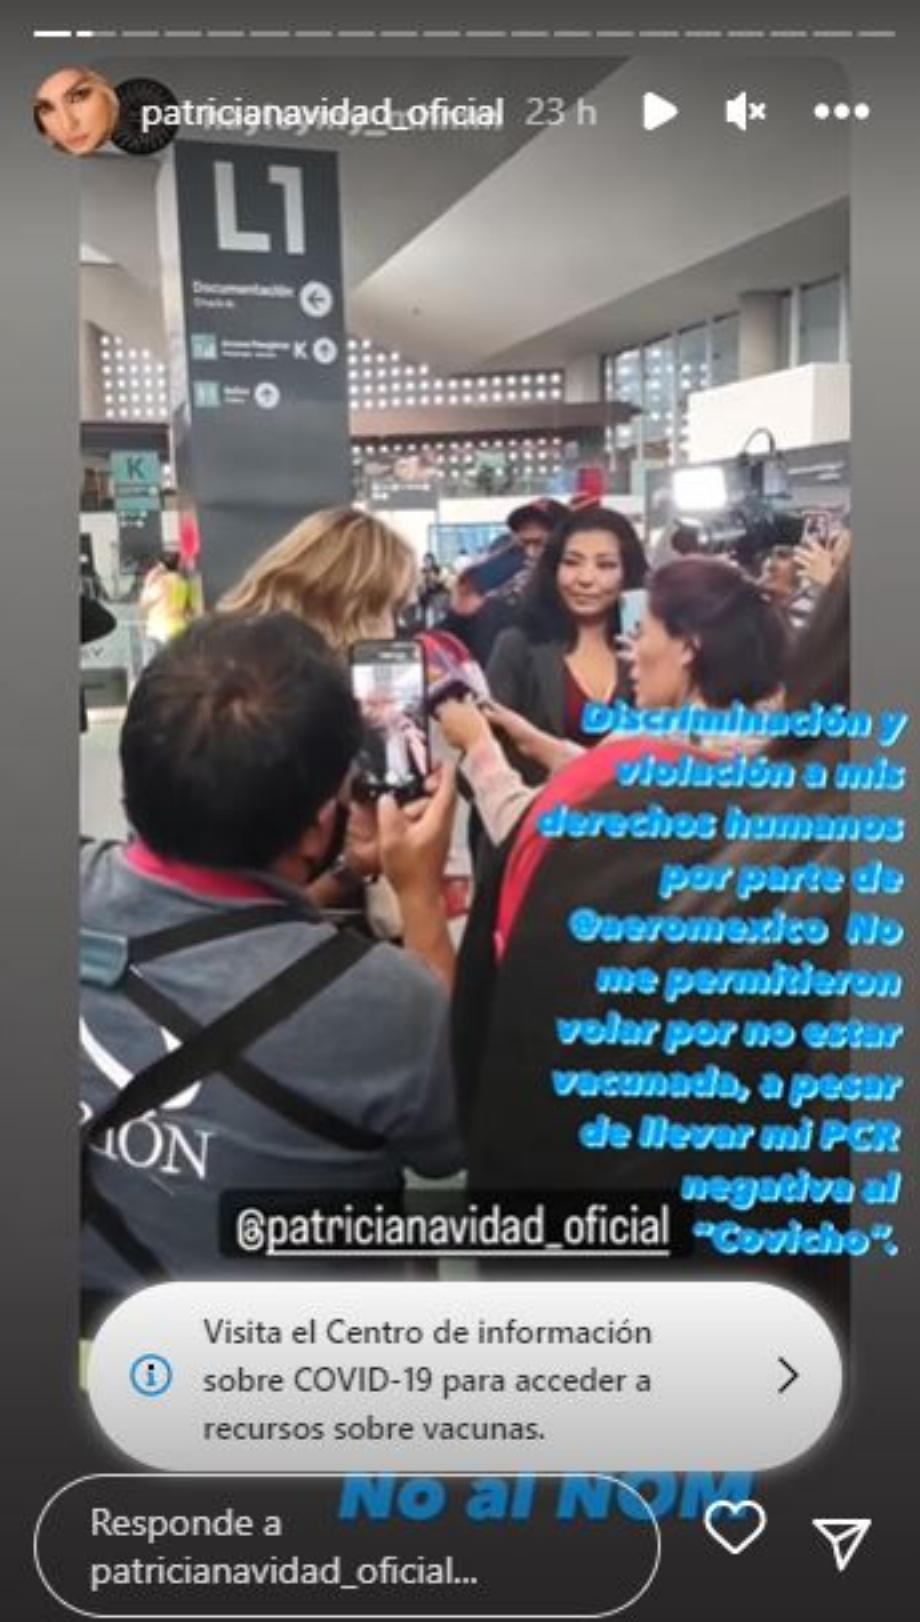 L'actrice a souligné avoir été victime de discrimination de la part d'Aeroméxico, une entreprise avec laquelle elle a déjà eu des problèmes (Capture d'écran/Instagram)